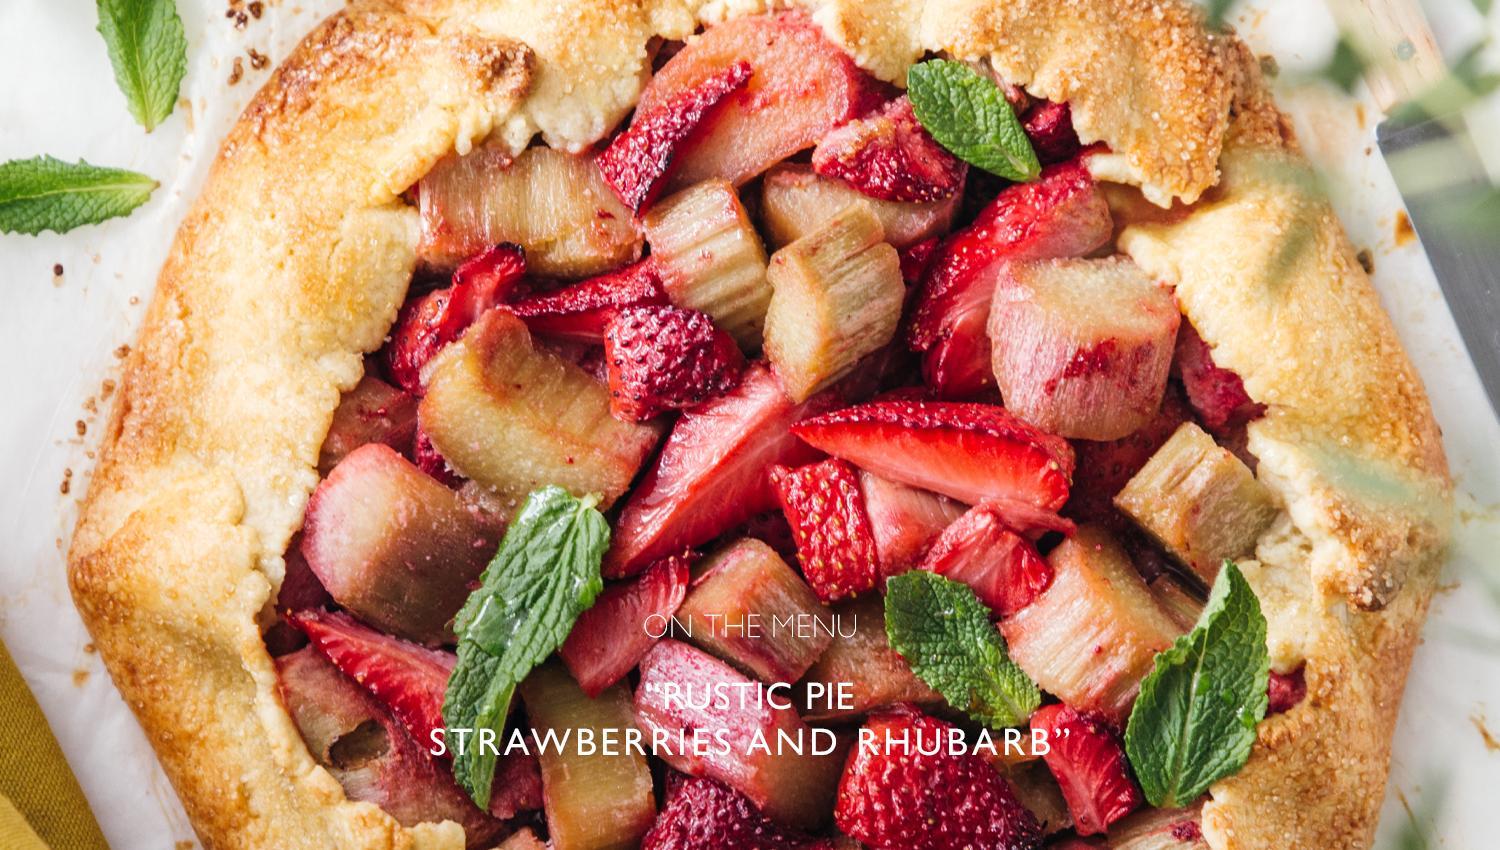 Strawberries and rhubarb rustic pie